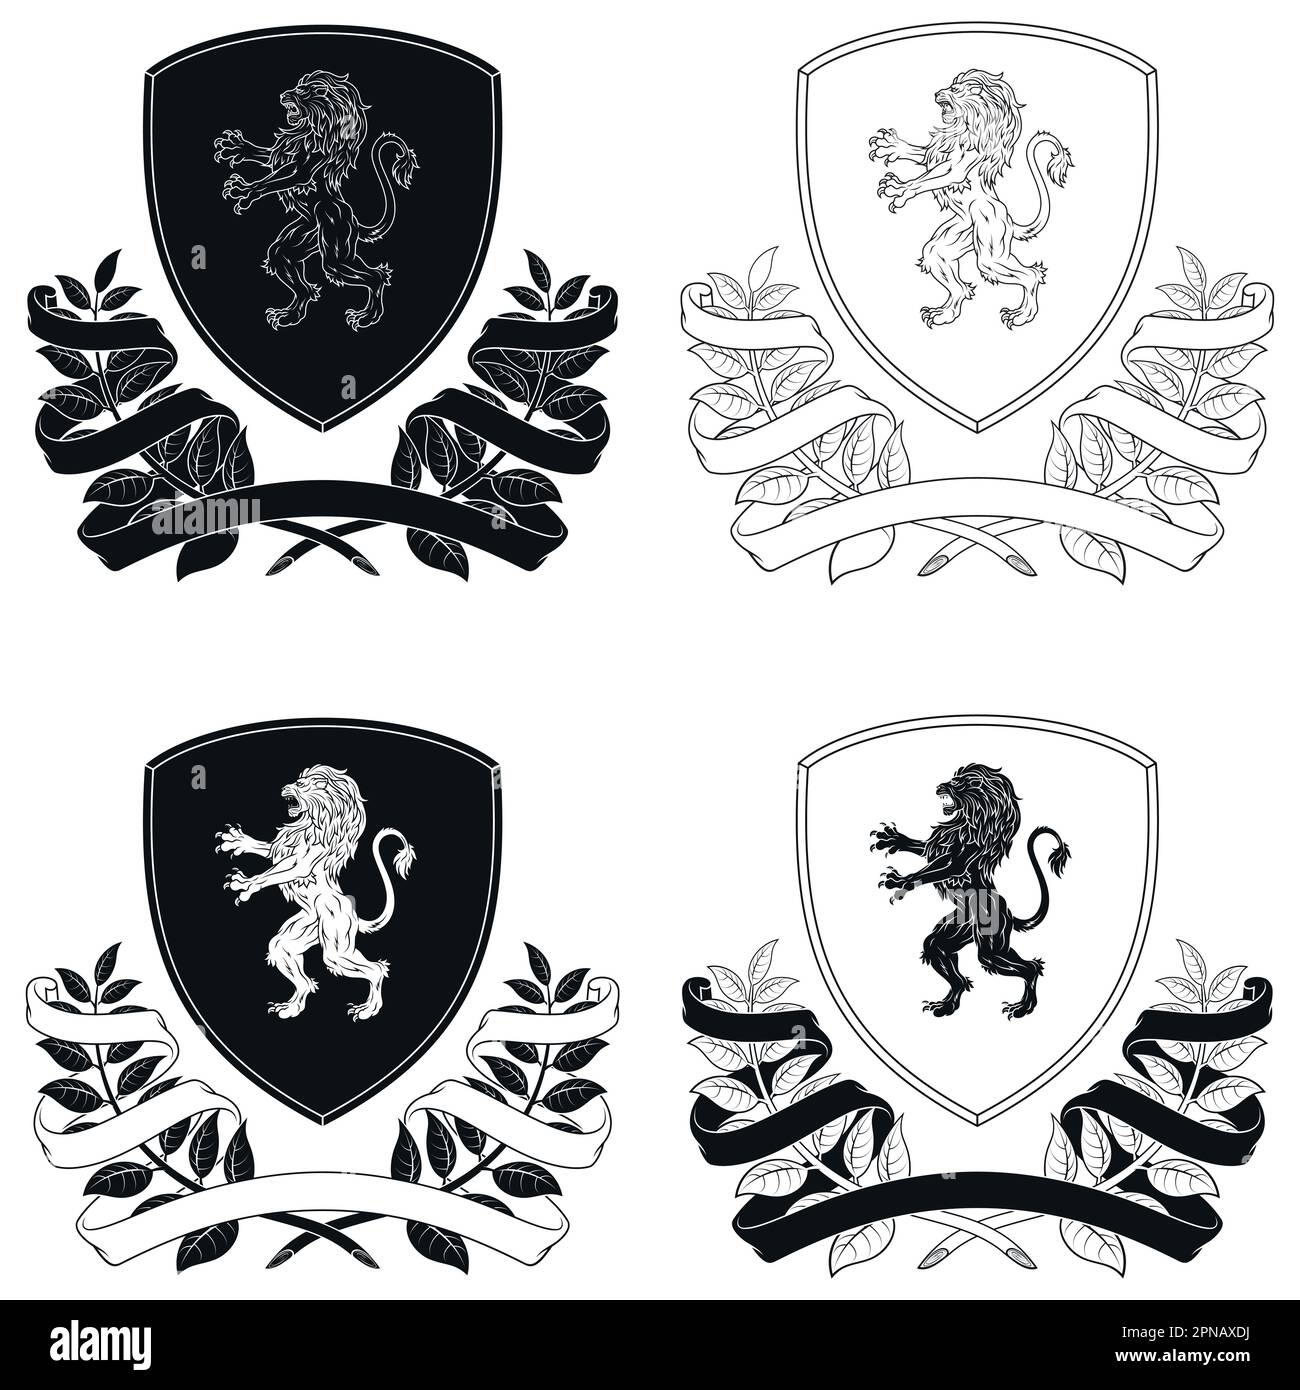 Diseño vectorial de escudo heráldico de la Edad Media, escudo noble de la monarquía europea con león rampante, corona de laurel y cinta Ilustración del Vector